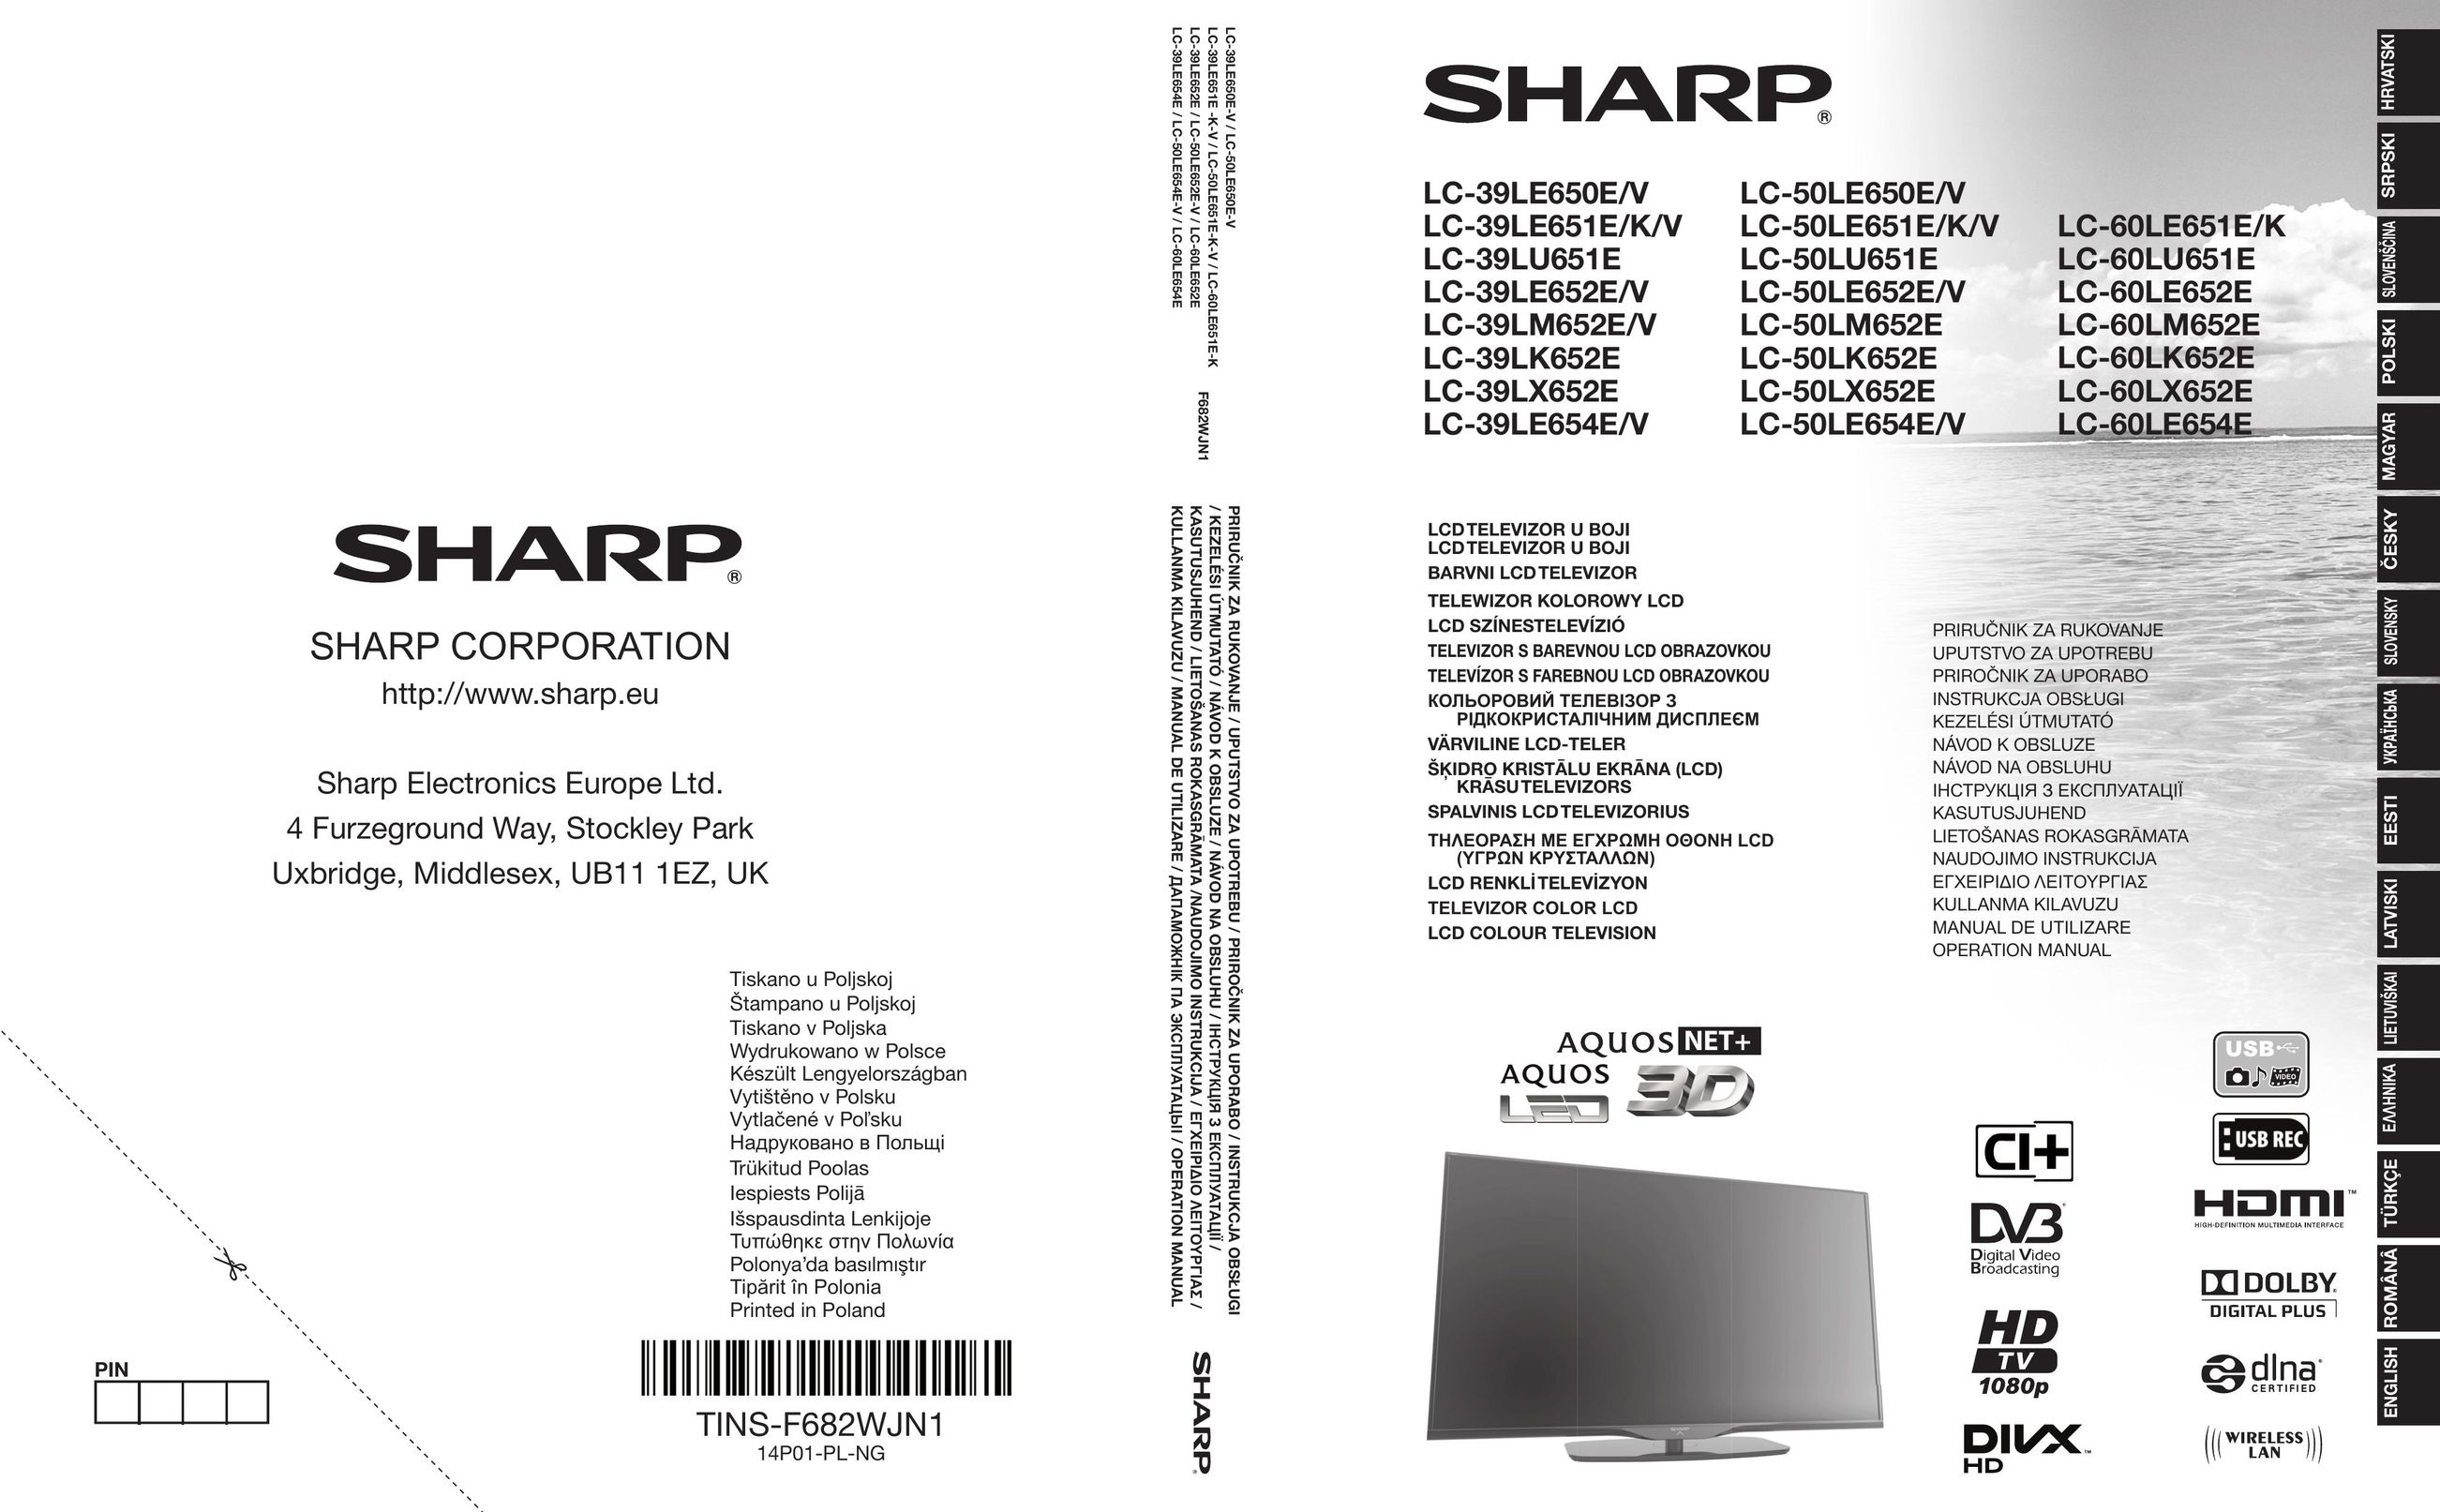 Sharp LC-50LE650E/V Car Video System User Manual